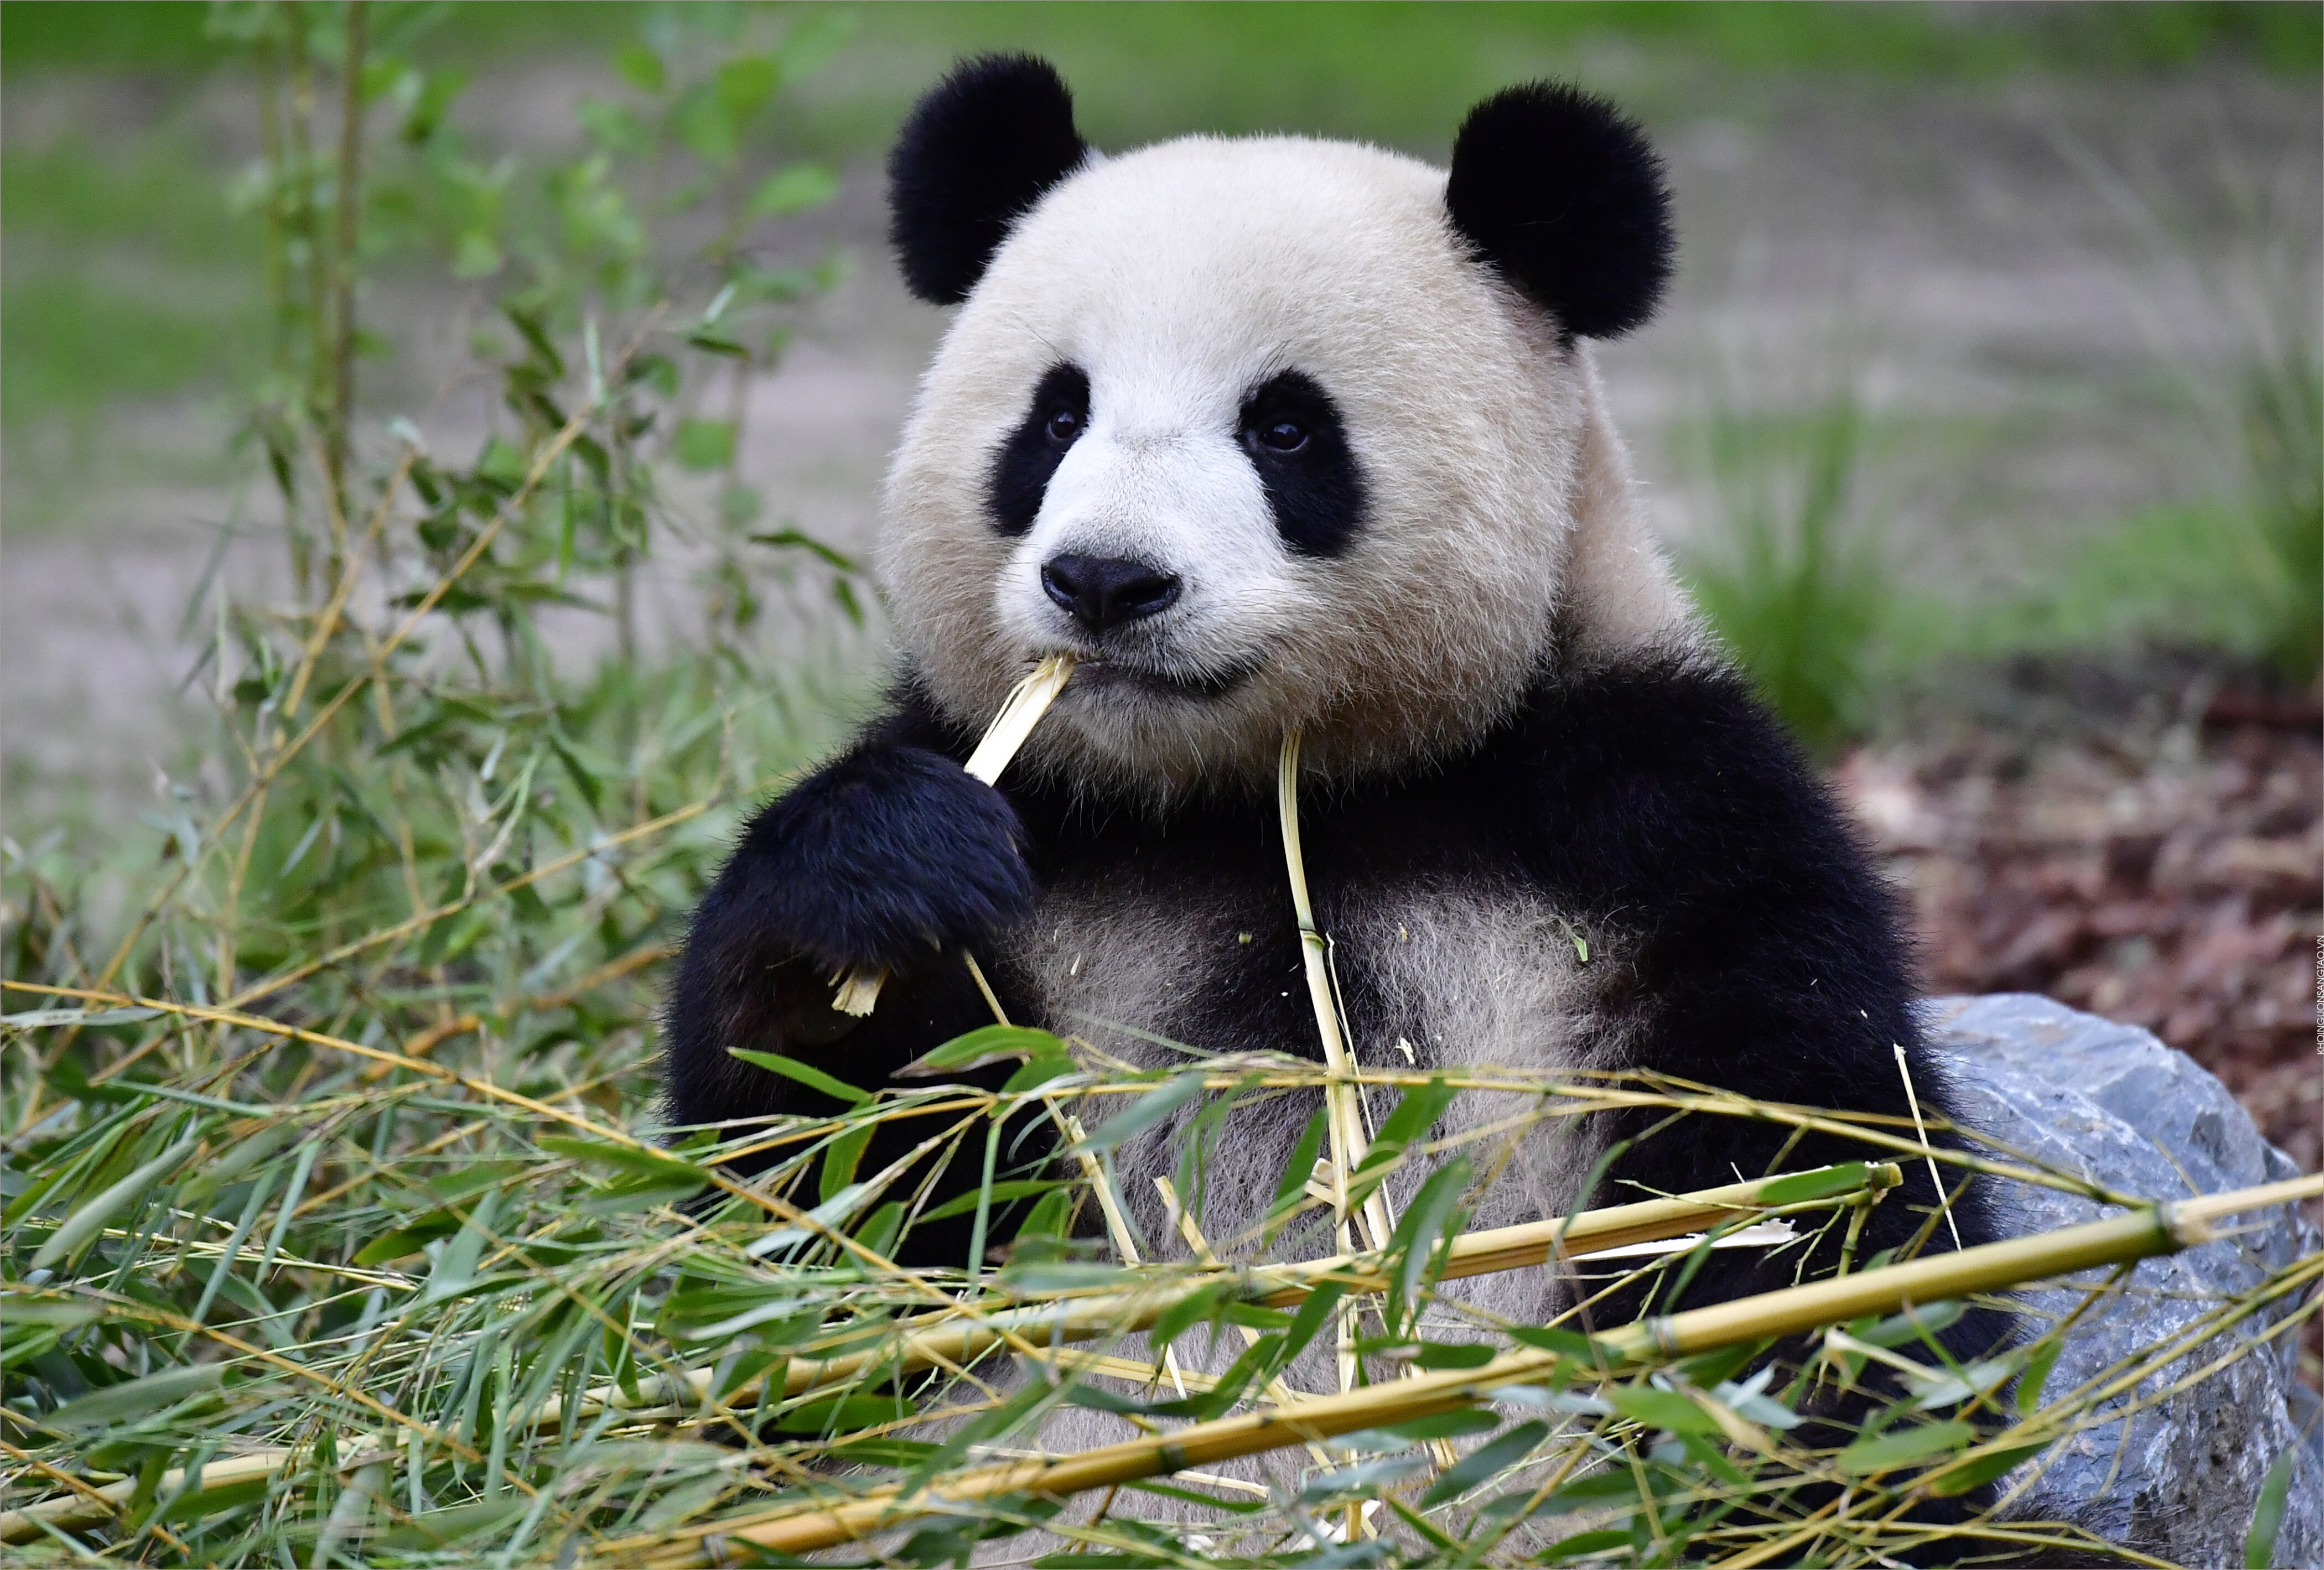 Mẫu mô hình gấu trúc Panda kính cận đeo máy ảnh dễ thương cho các bạn